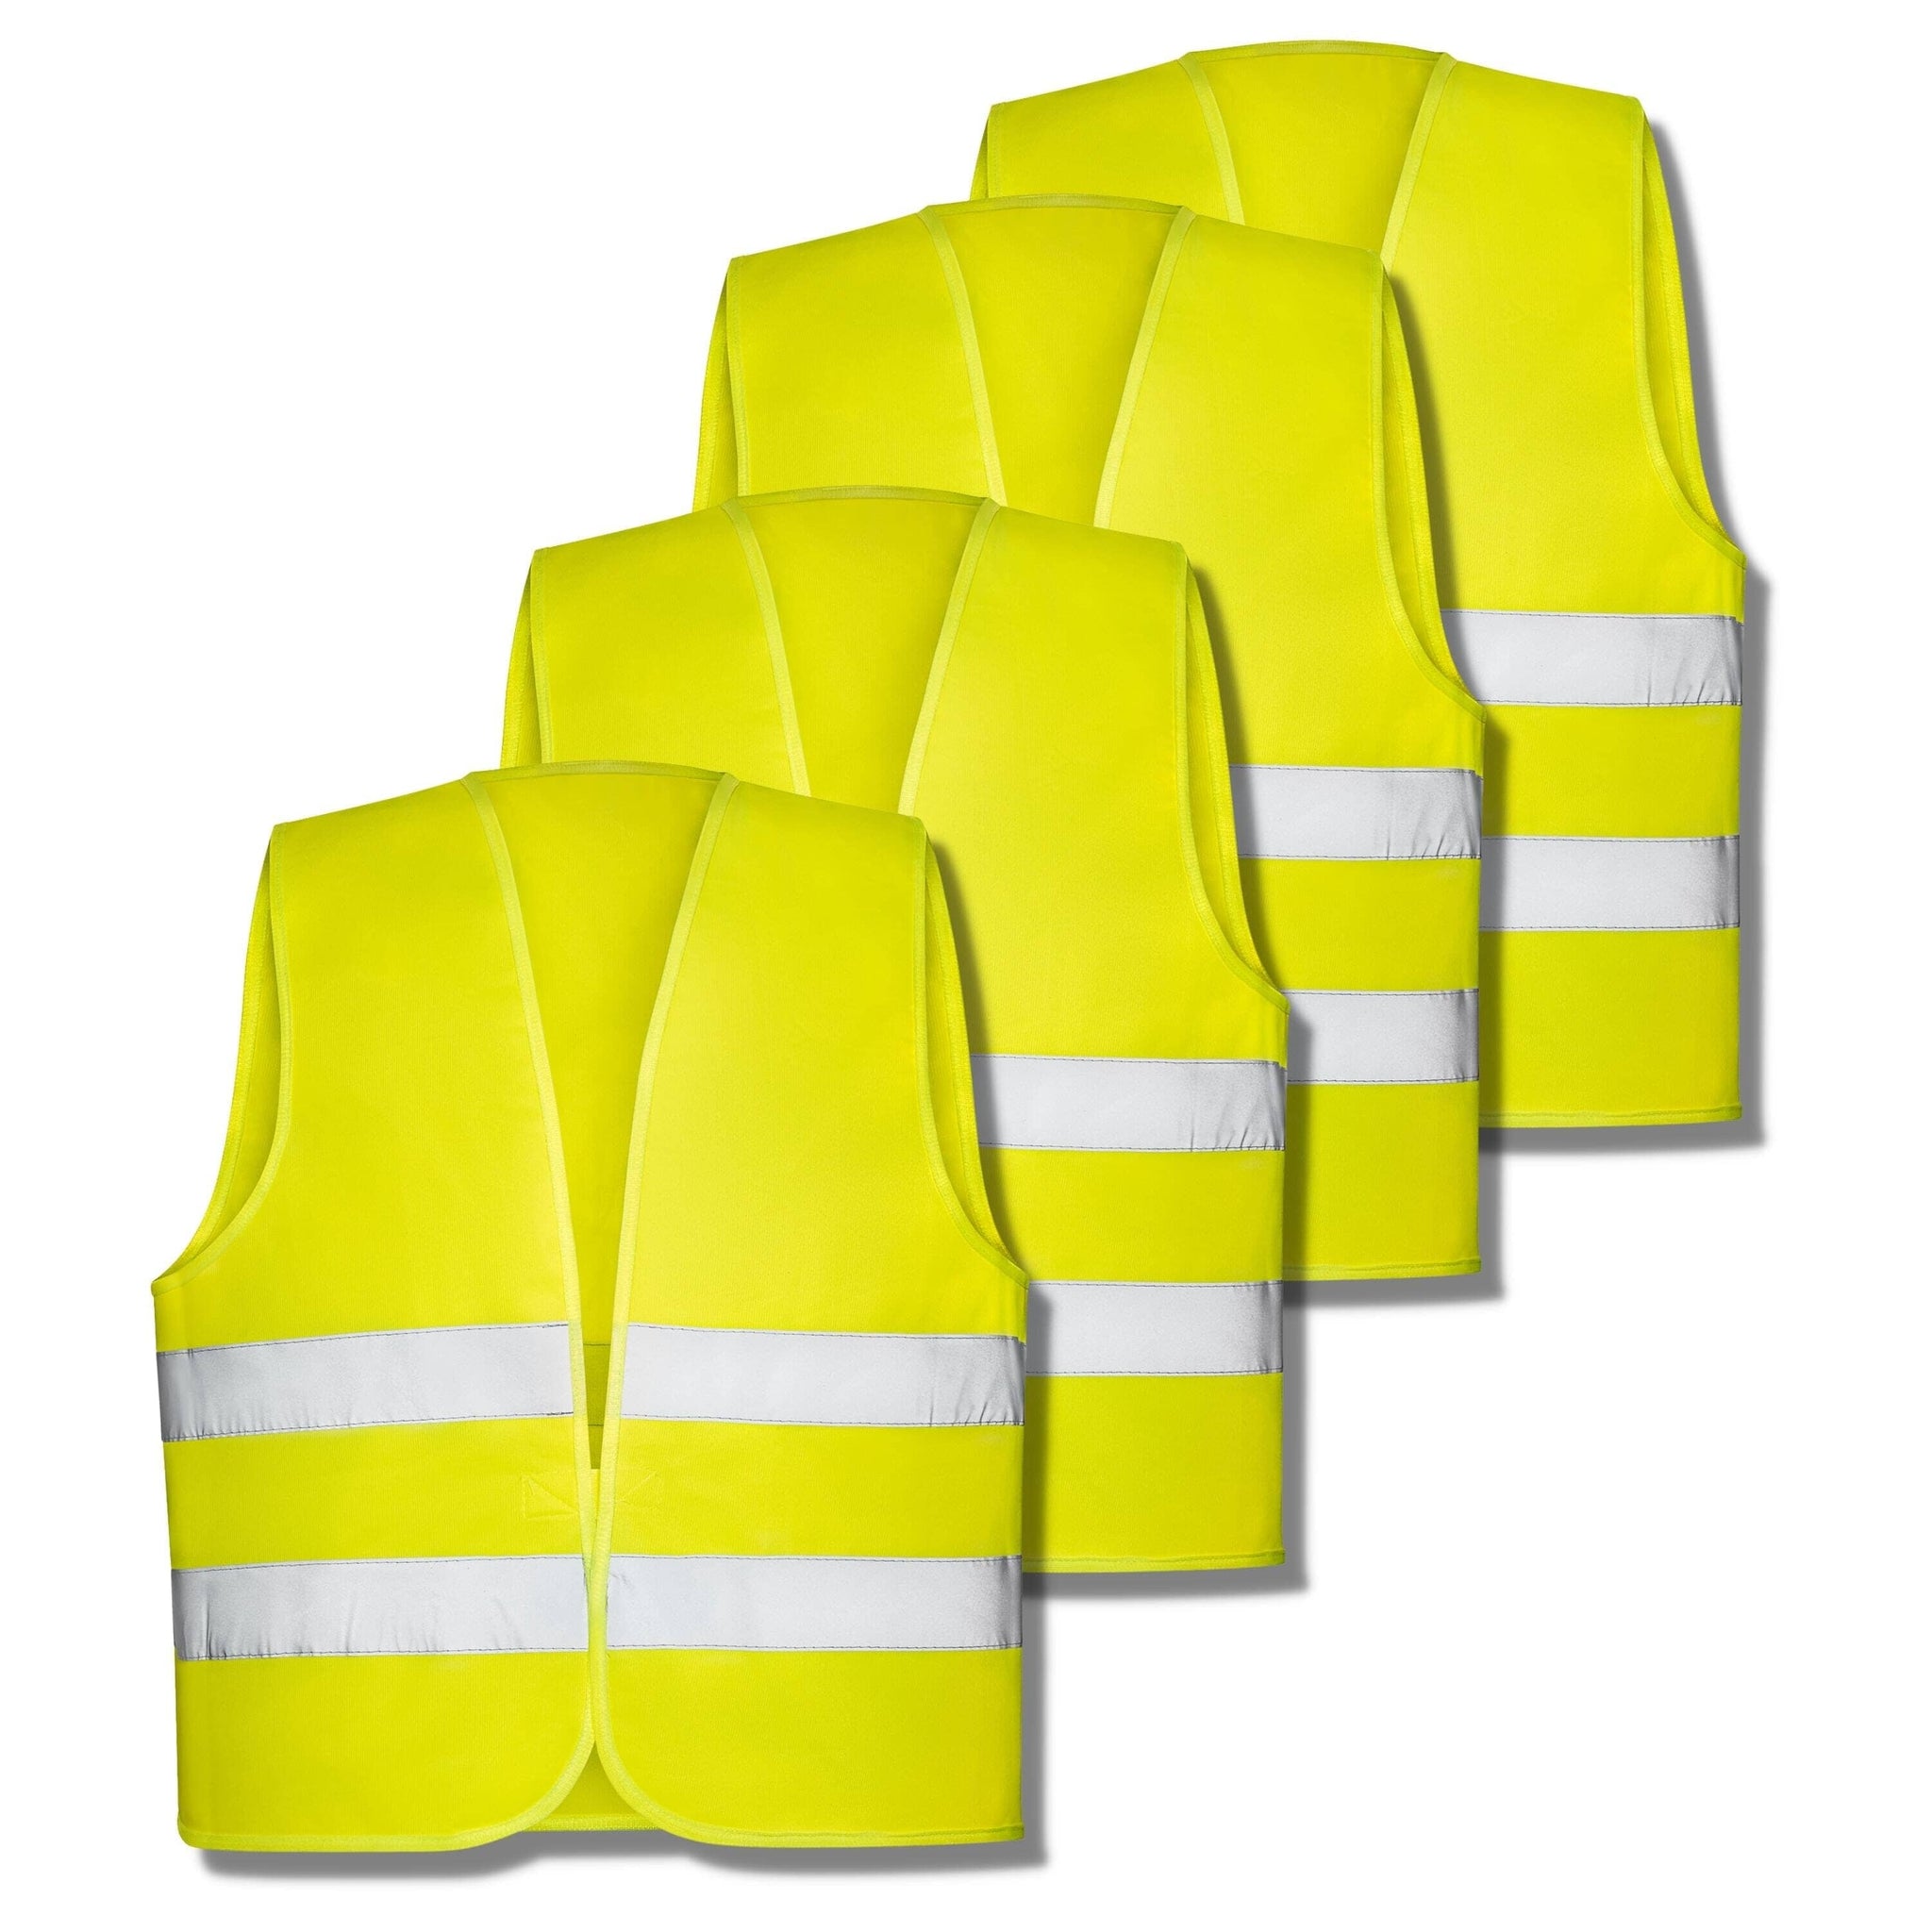 Warnweste, Sicherheitsweste, Pannenweste mit Reflexstreifen EN ISO 20471 -  2 Farben in S, M, L, XL, XXL, XXXL - Farbe:gelb, Größe:M